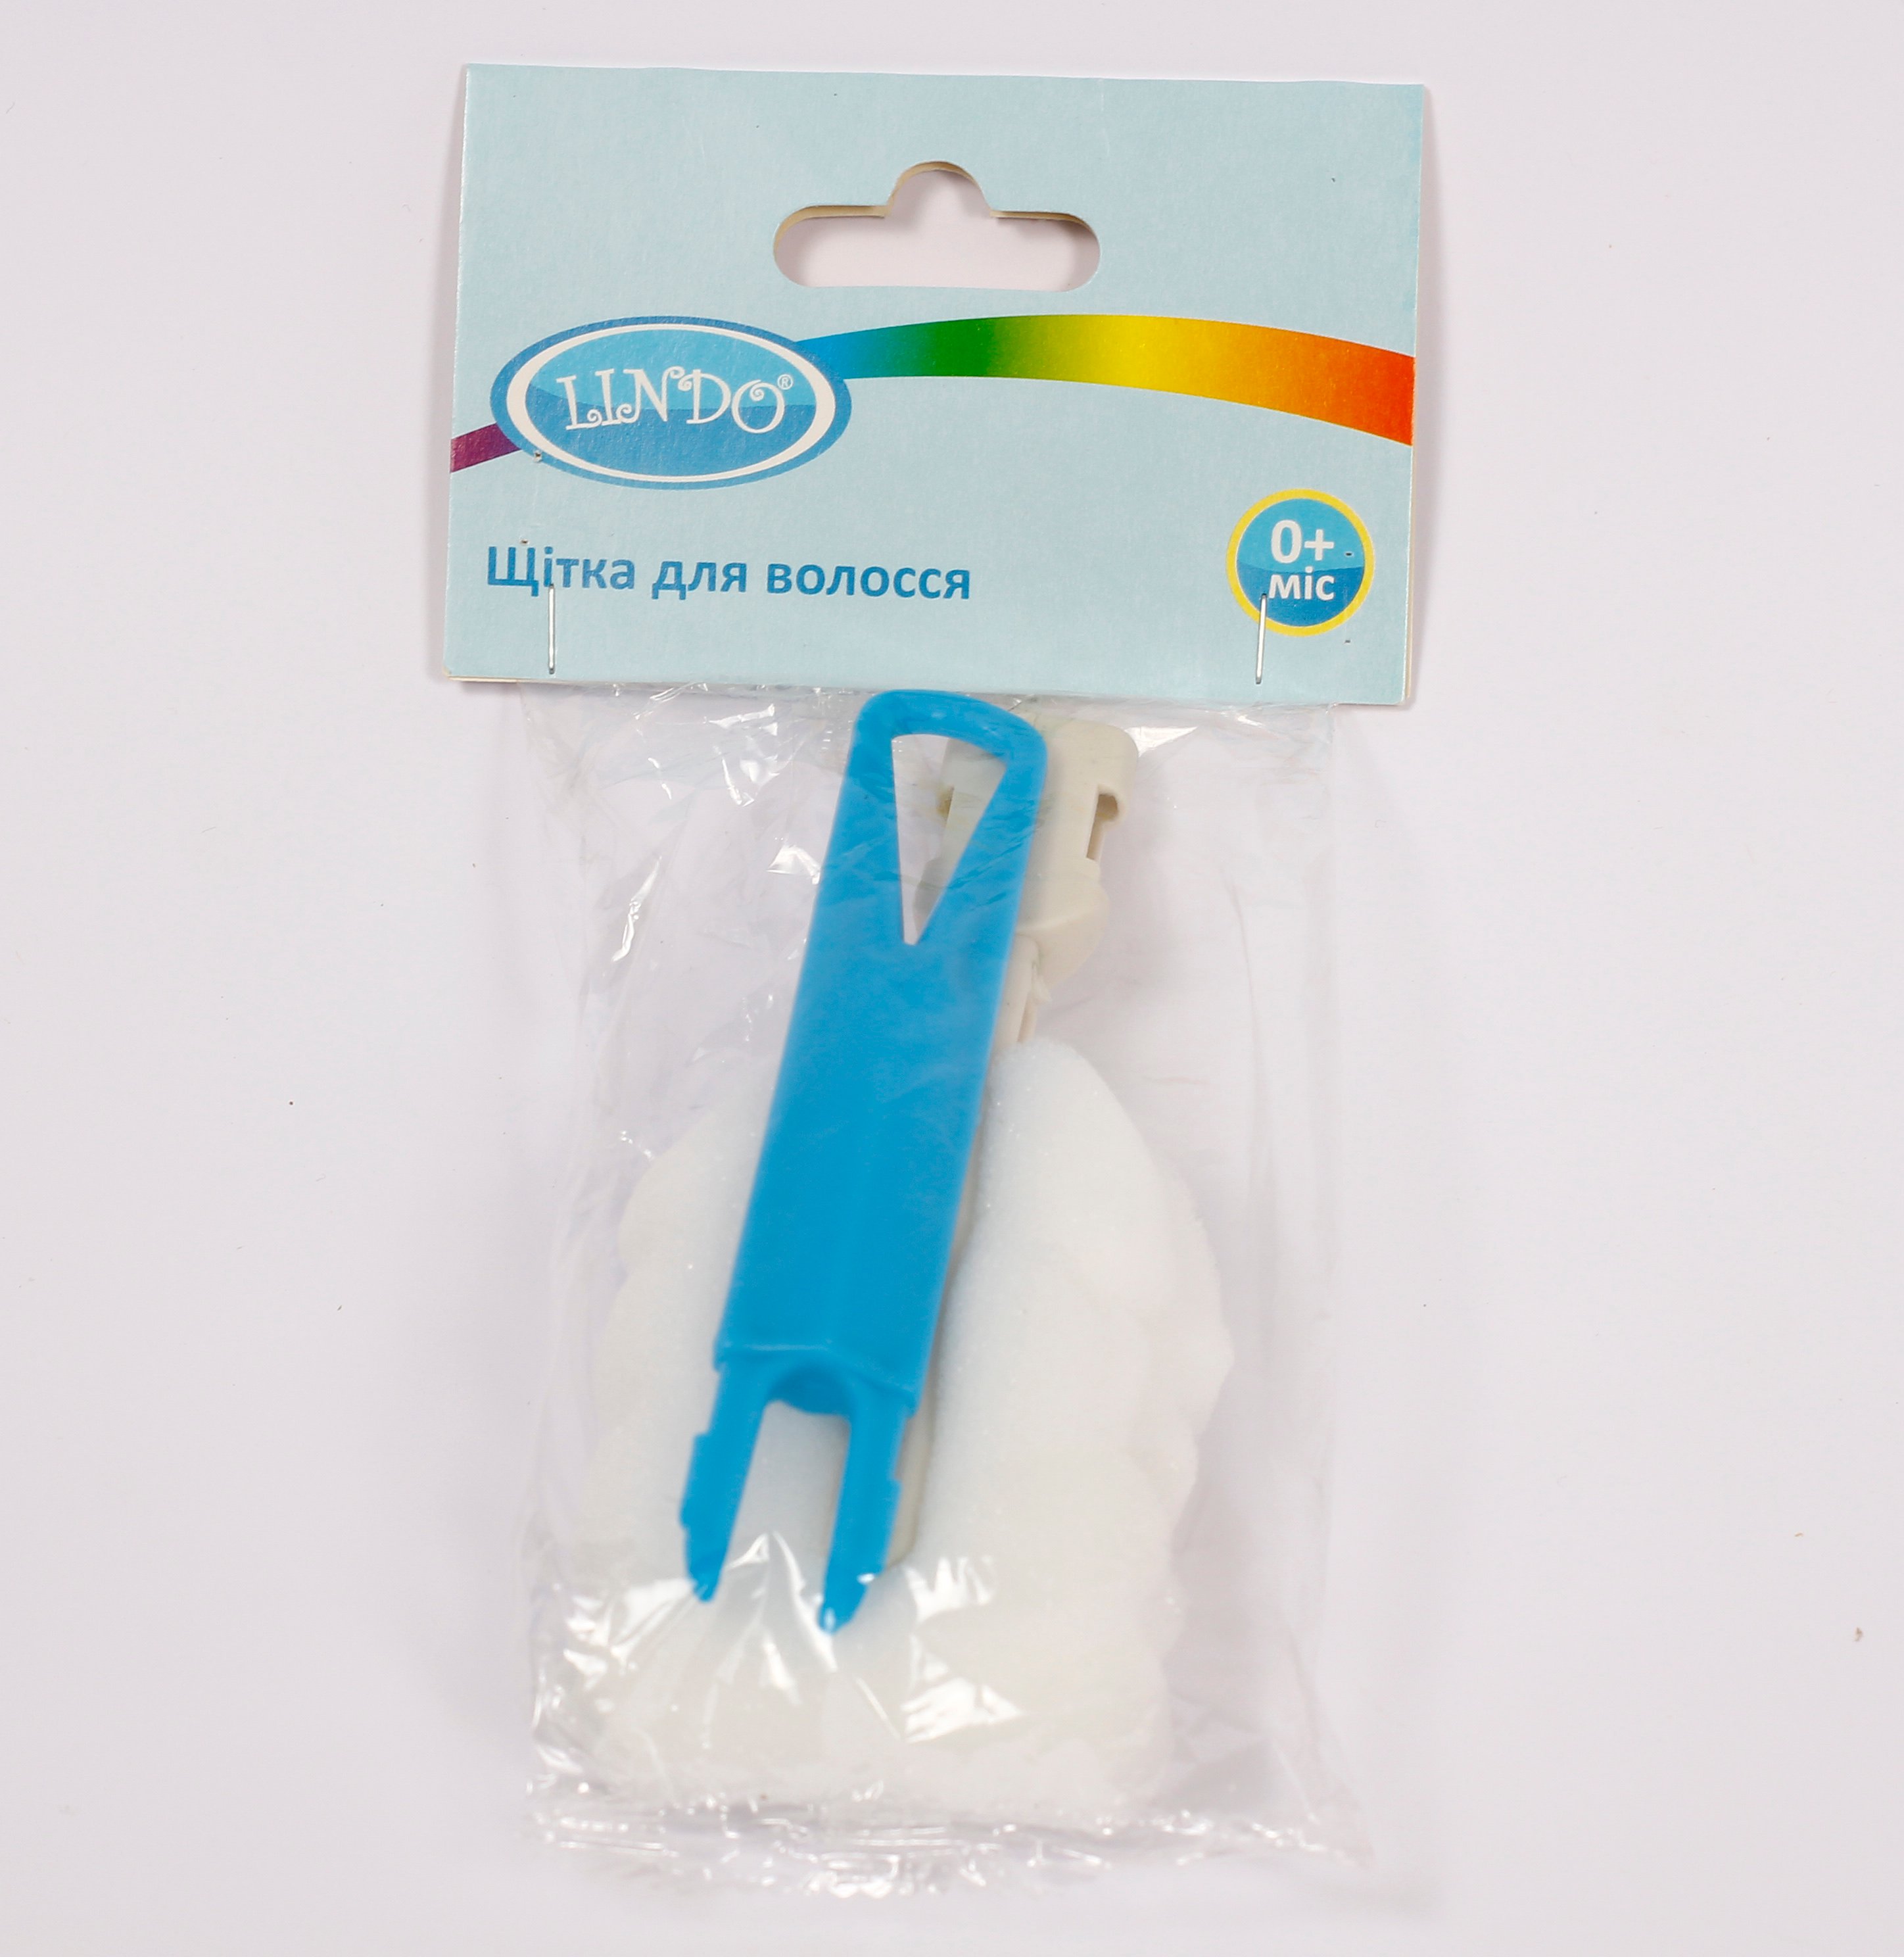 Ершик для мытья бутылочек Lindo, поролоновый, голубой (Рk 013-А син) - фото 2